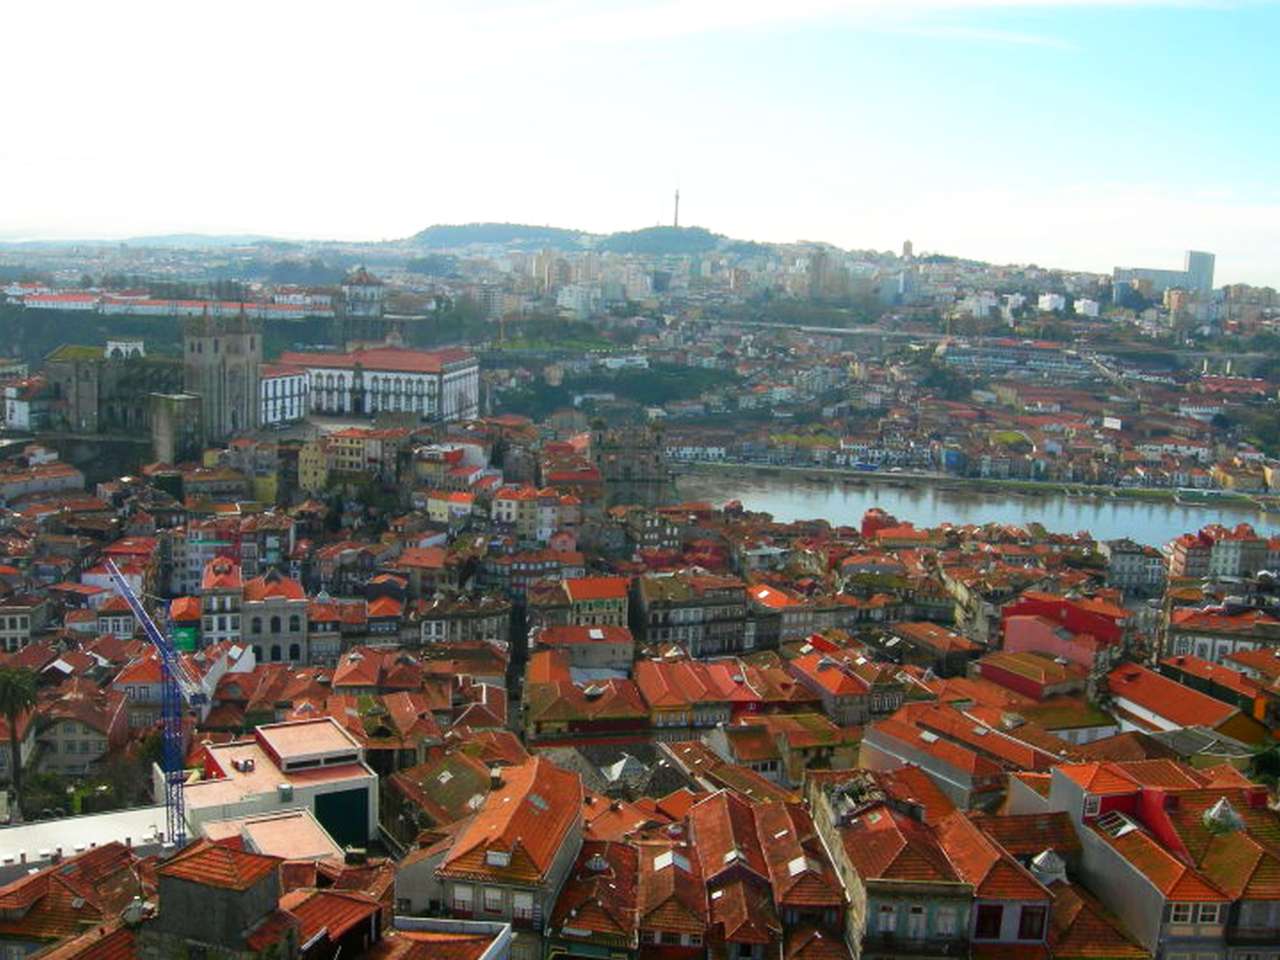 Anda no Porto. quebra-cabeças online